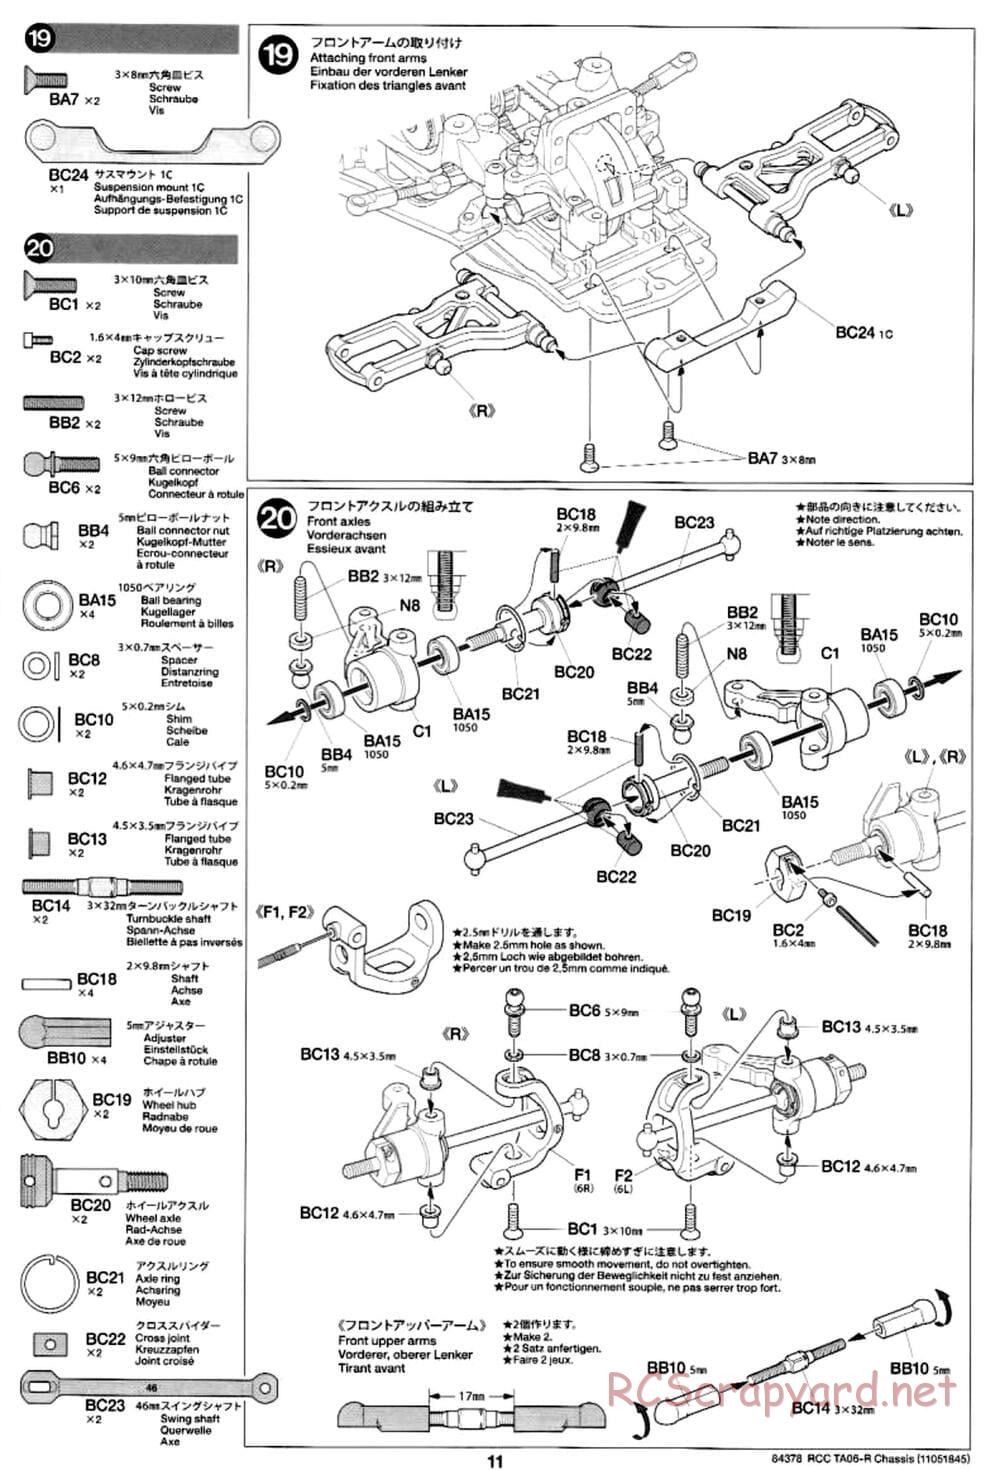 Tamiya - TA06-R Chassis - Manual - Page 11